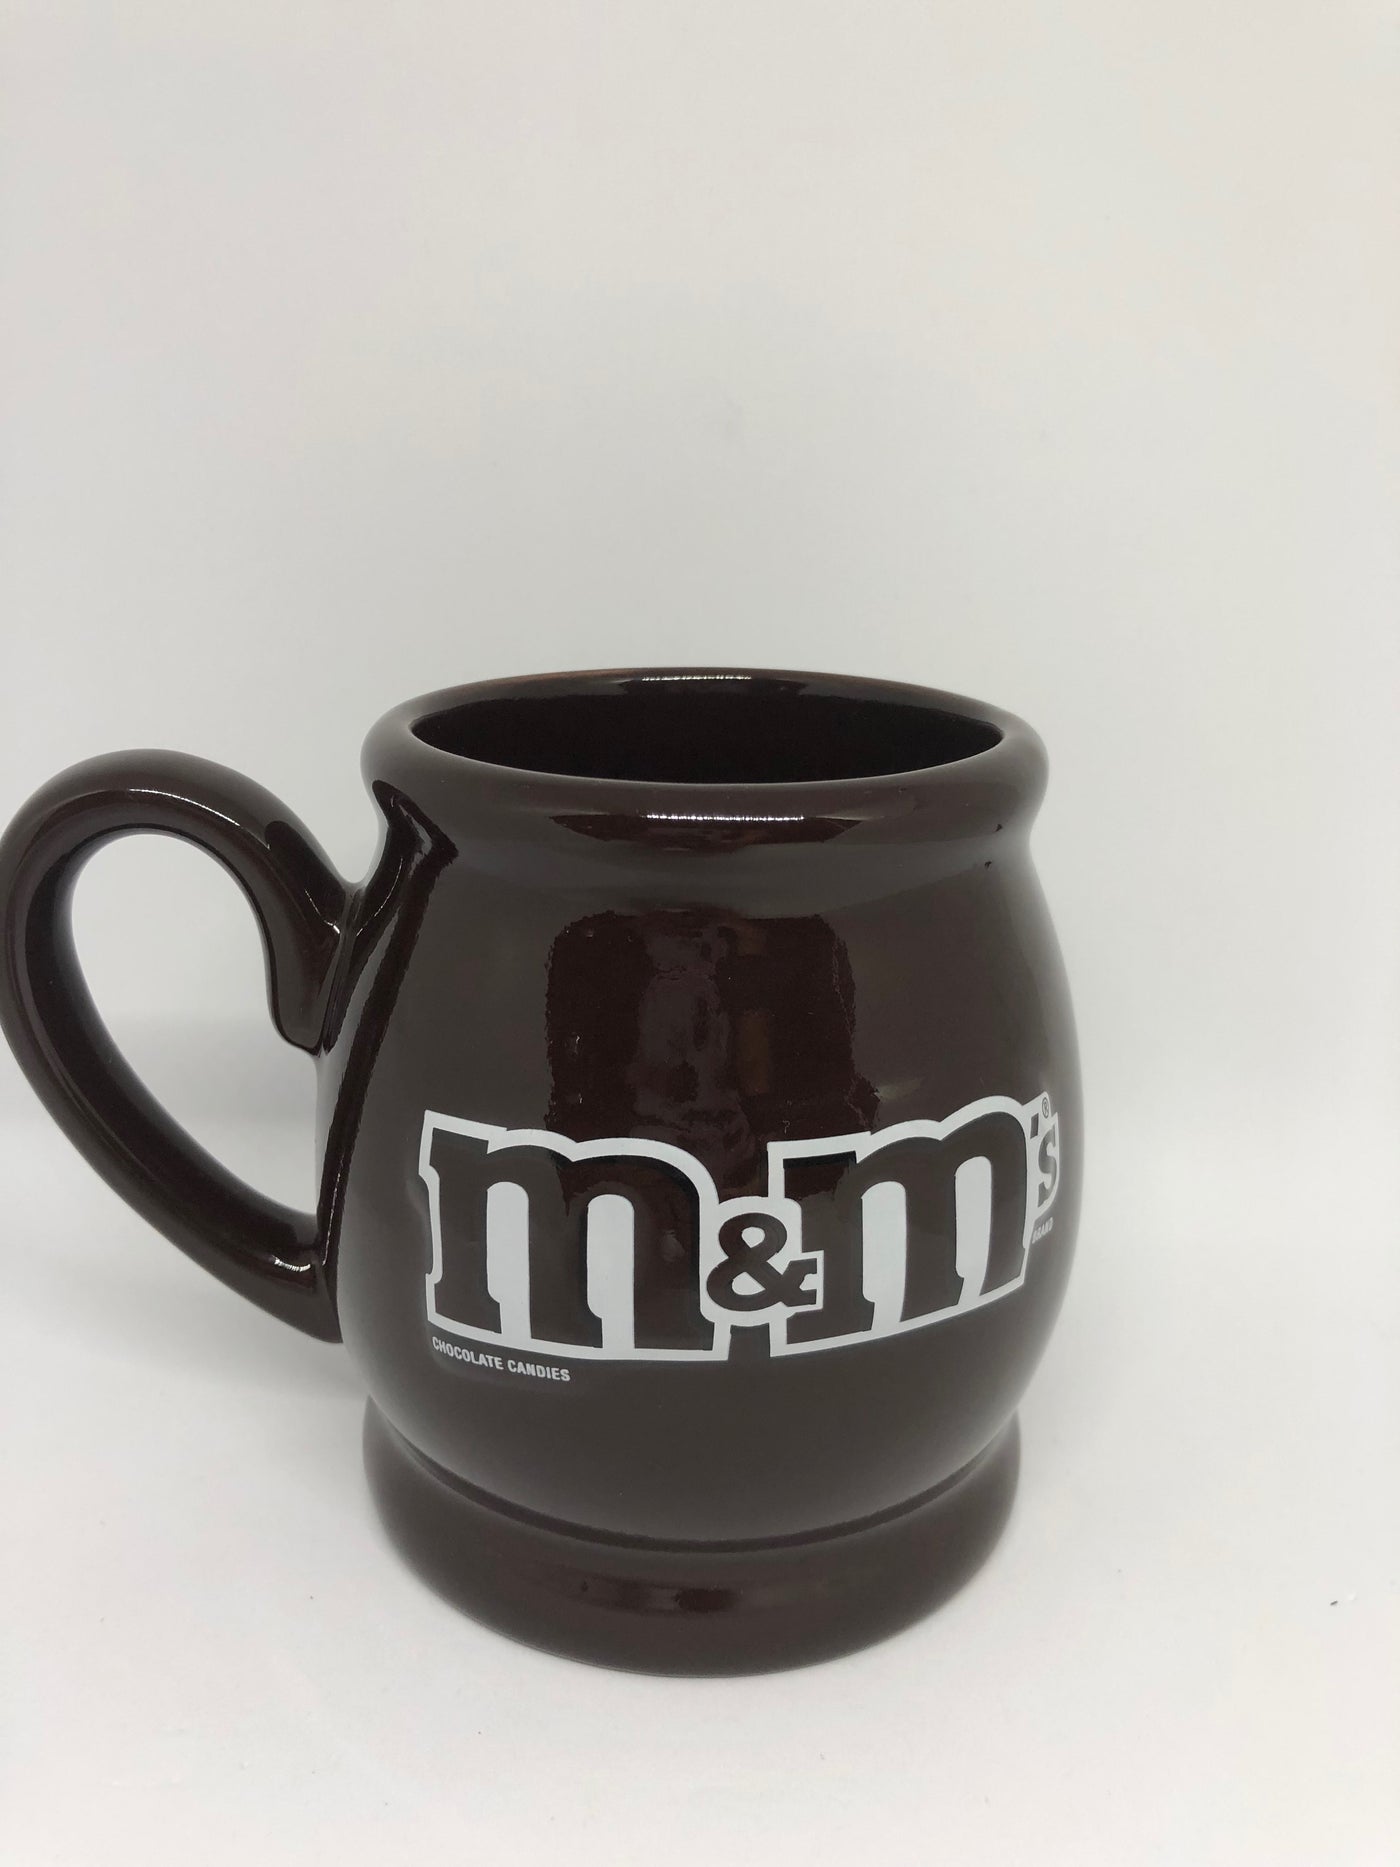 M&M's World Milk Chocolate Candies Yellow and Red Ceramic Coffee Mug New